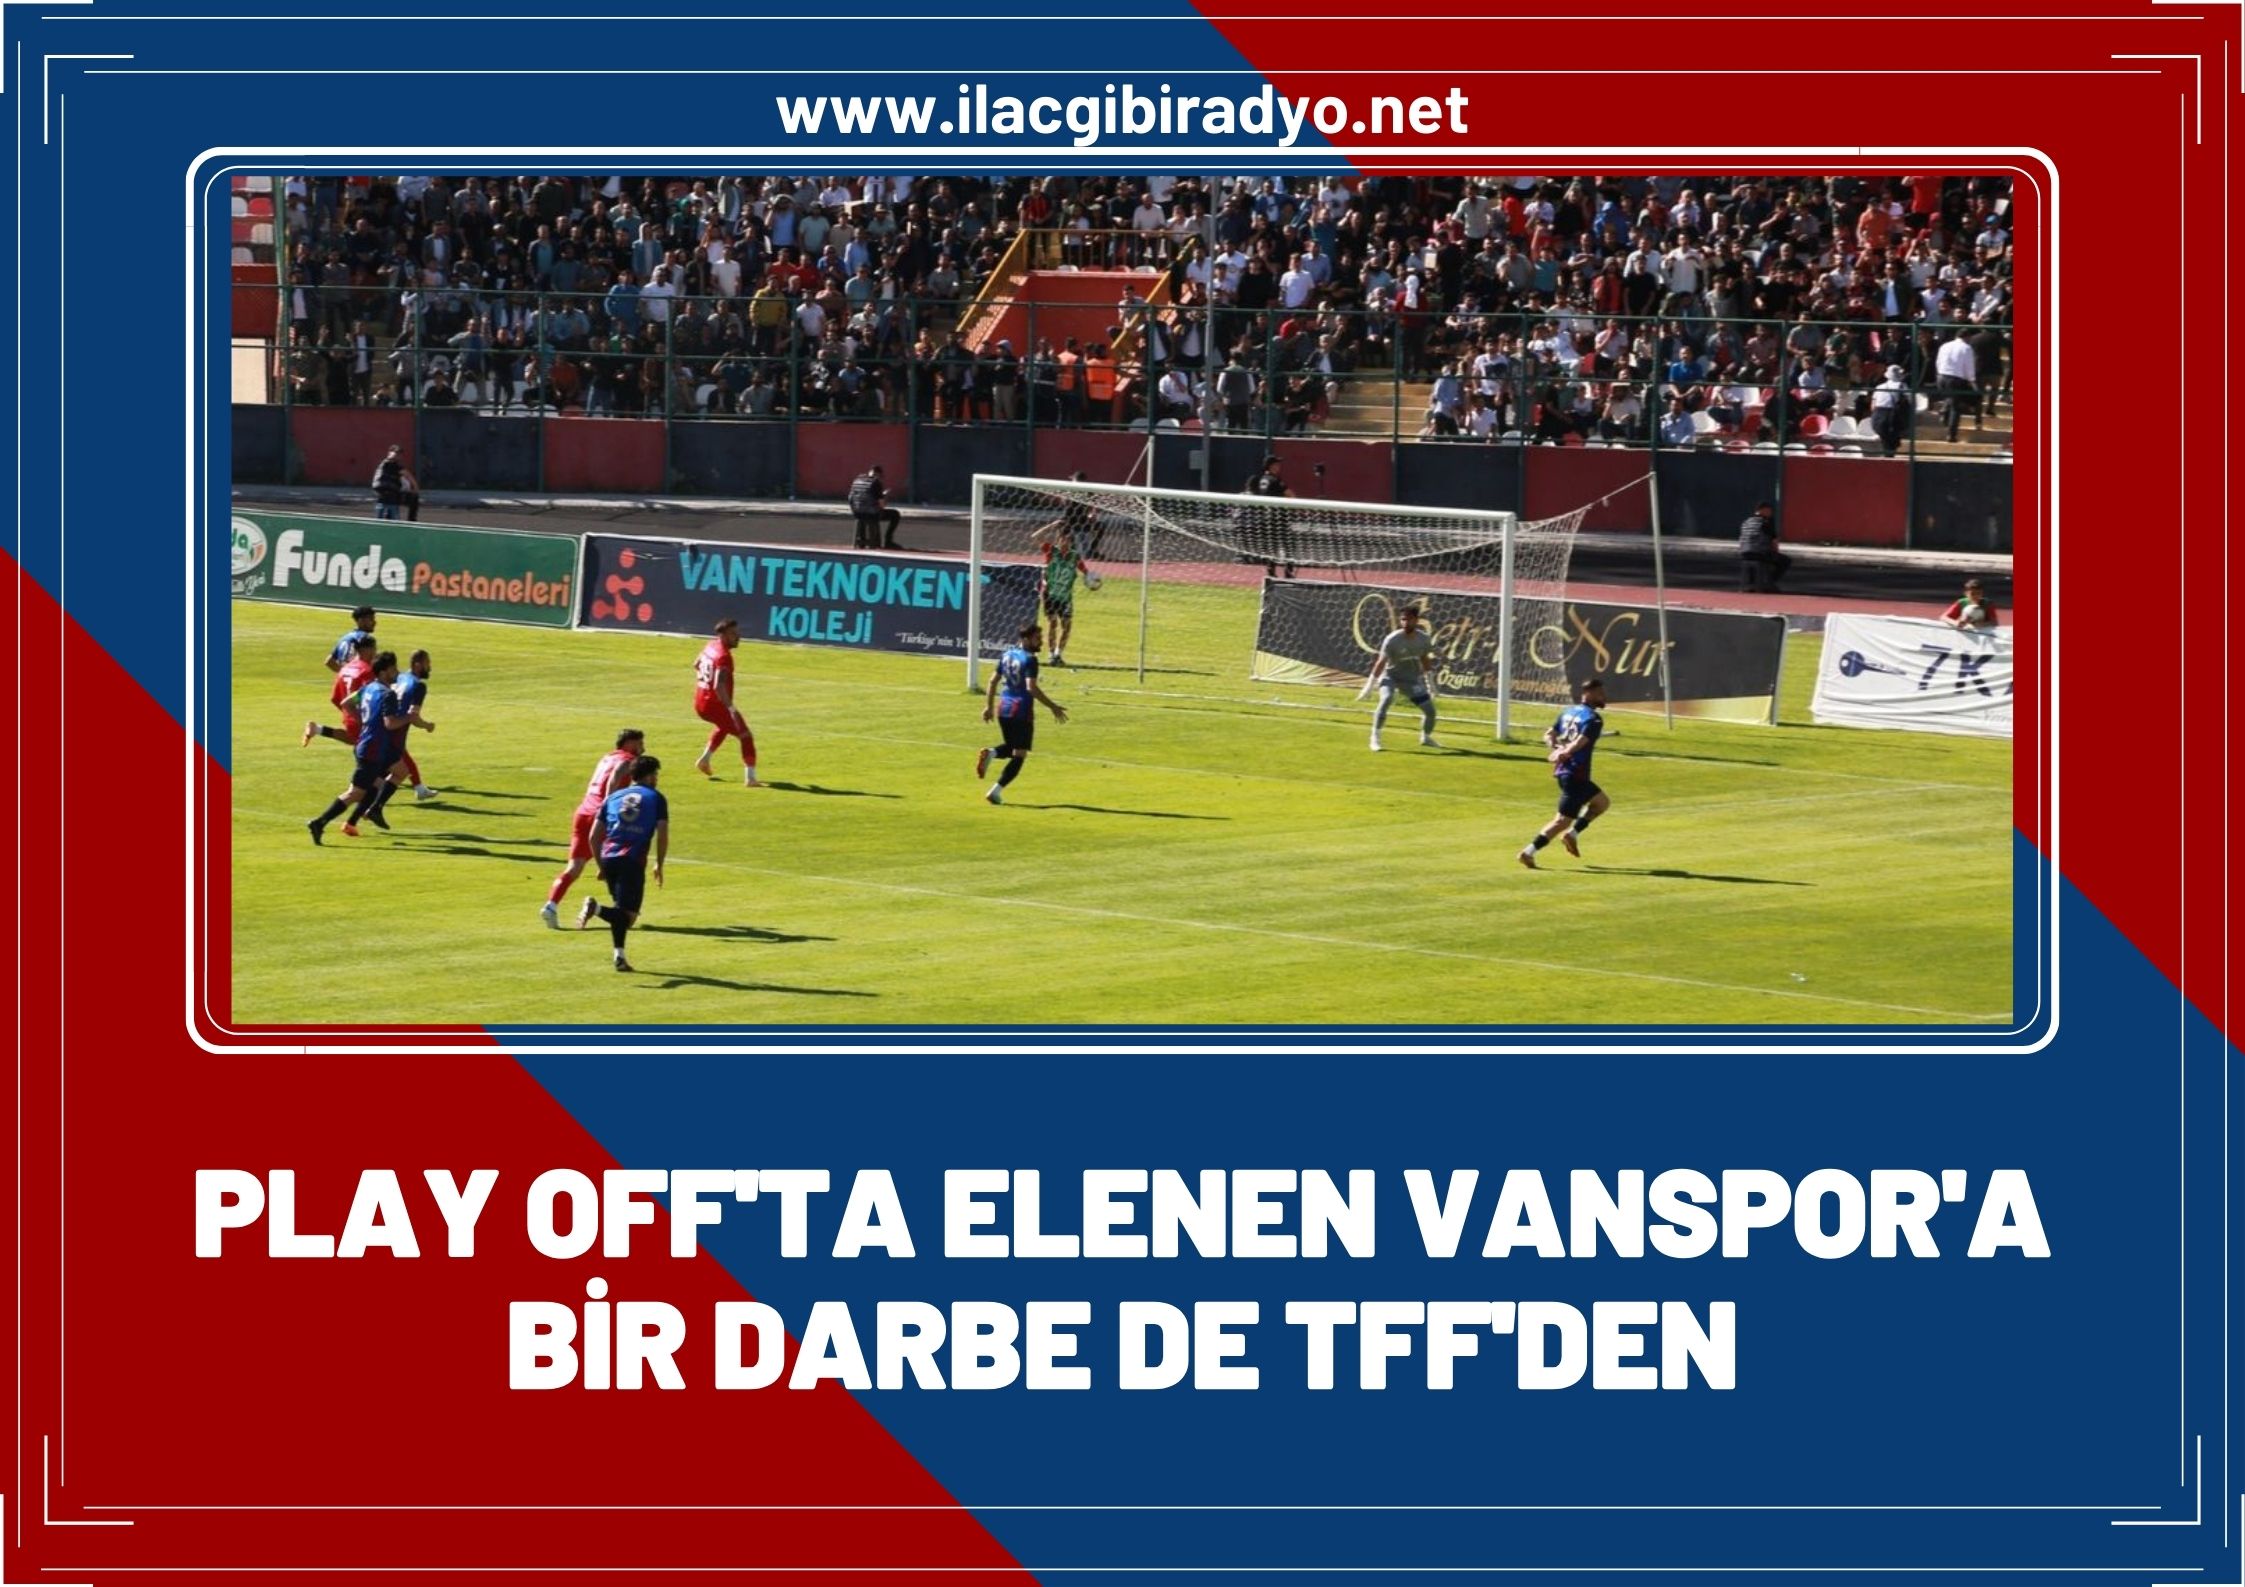 Play-off’ta elenen Vanspor’a bir darbede TFF’den!